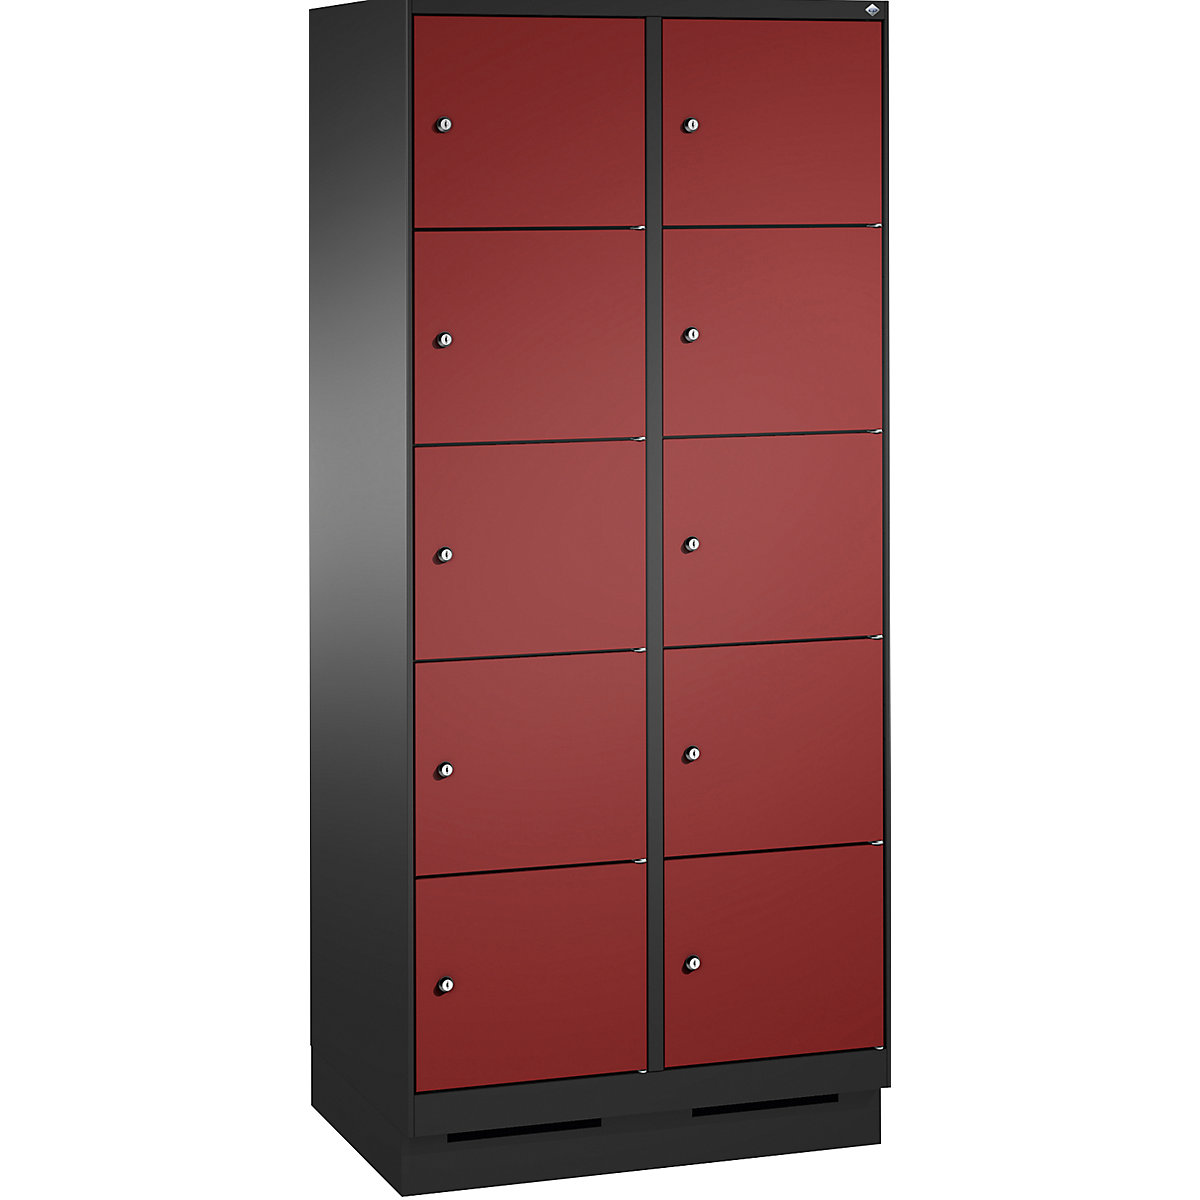 Armoire à casiers sur socle EVOLO – C+P, 2 compartiments, 5 casiers chacun, largeur compartiments 400 mm, gris noir / rouge rubis-10